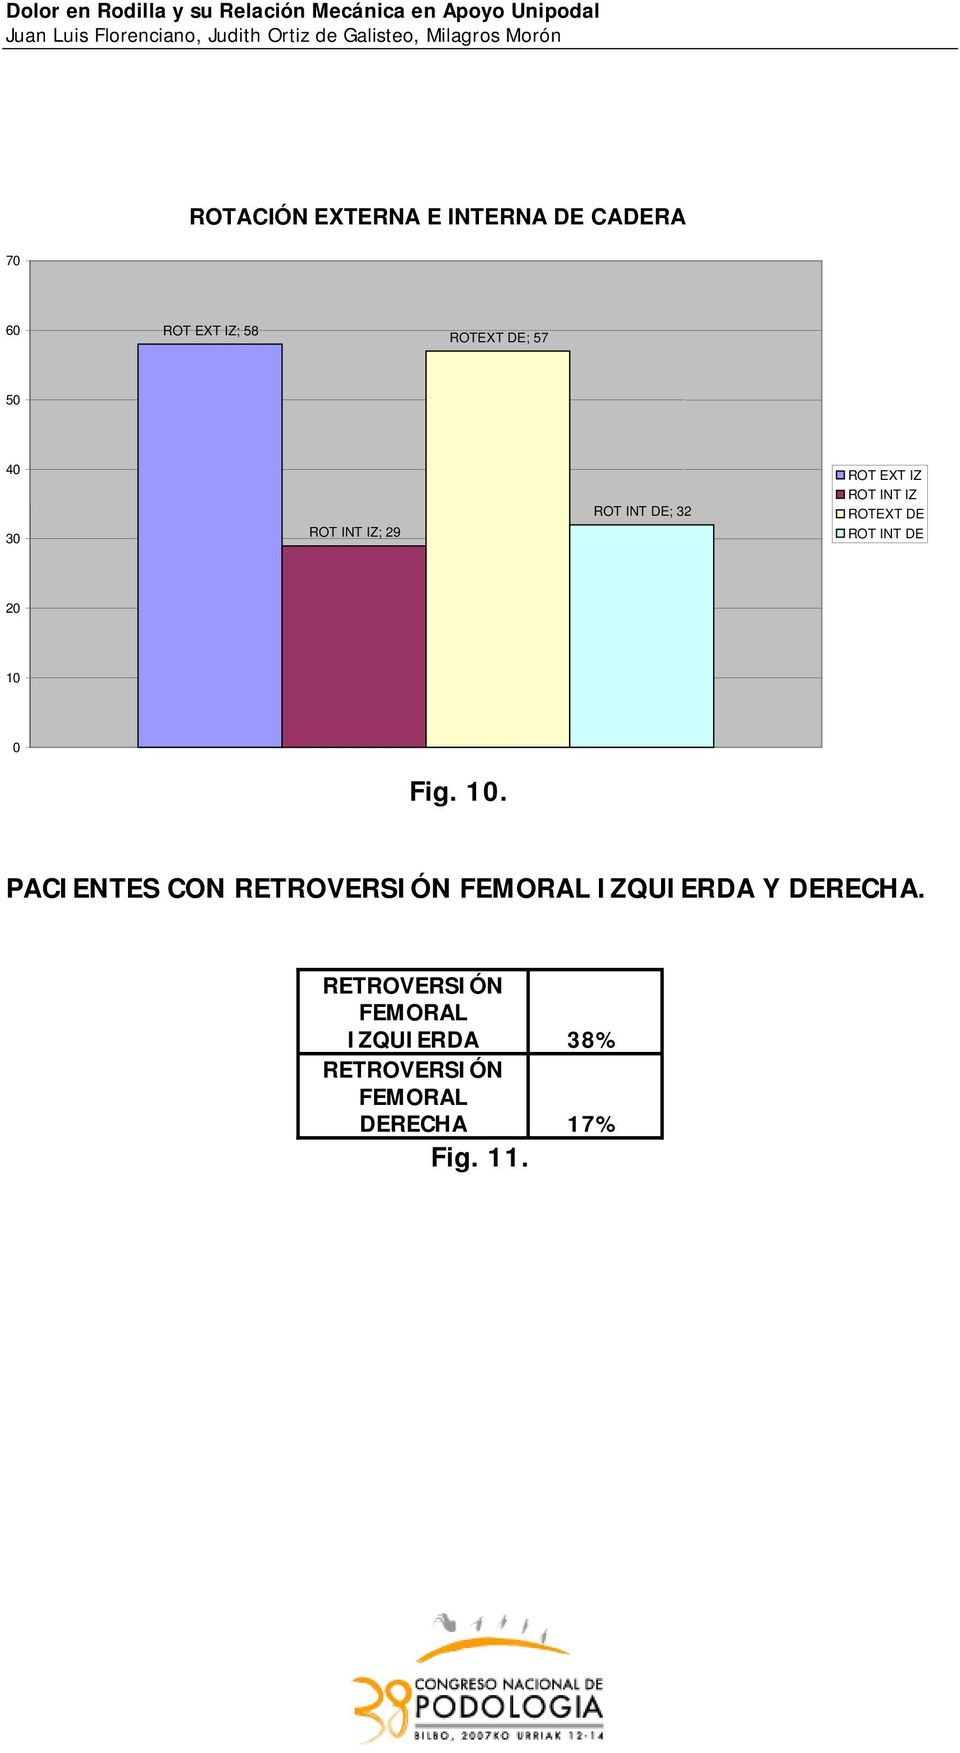 DE 20 10 0 Fig. 10. PACIENTES CON RETROVERSIÓN FEMORAL IZQUIERDA Y DERECHA.